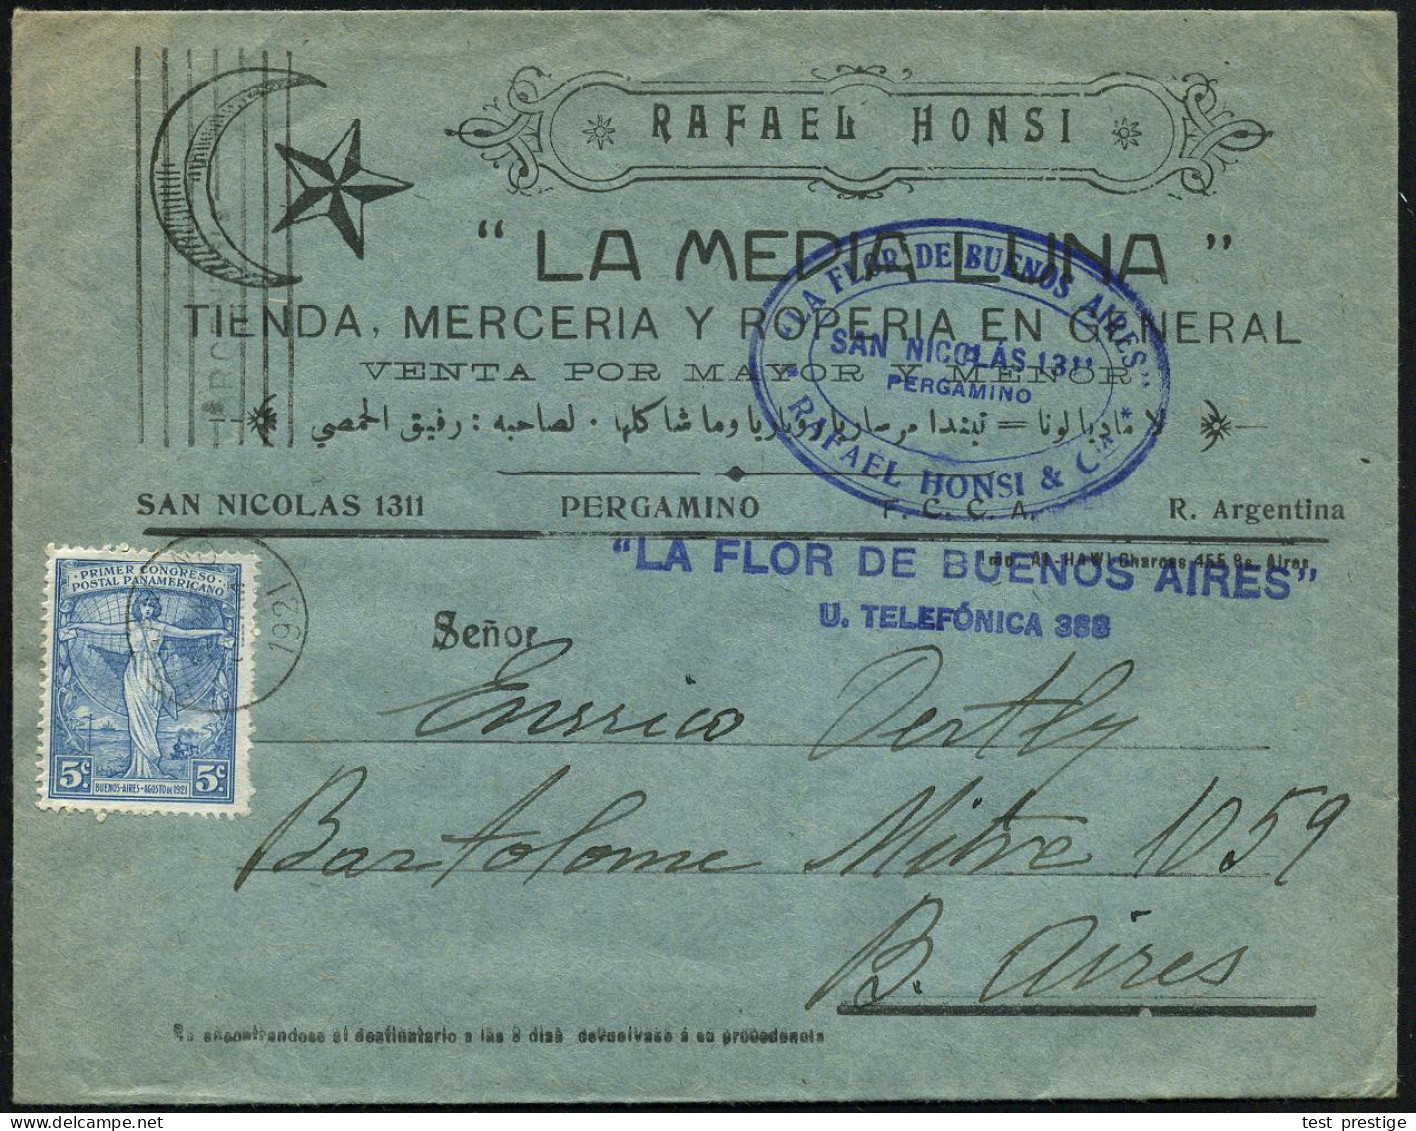 ARGENTINIEN 1921 (29.8.) MaWSt.: BUENOS AIRES/ARGENTINA AUF EF 5 C. "I. Panamerikanischer Post-Kongreß" Klar Gest. Firme - UPU (Universal Postal Union)